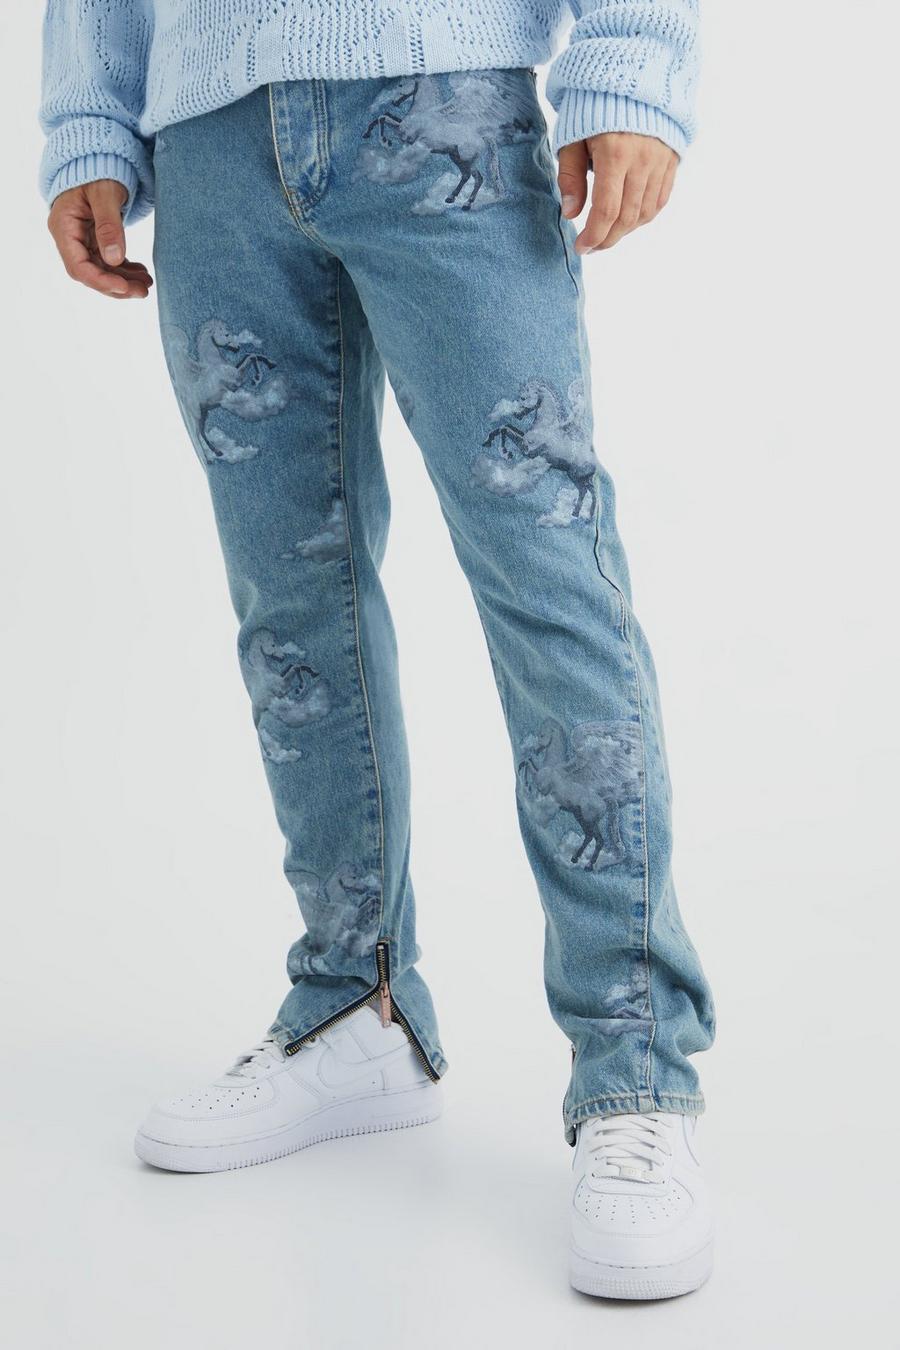 Jeans Slim Fit in denim rigido con grafica all over e inserti, Antique wash image number 1